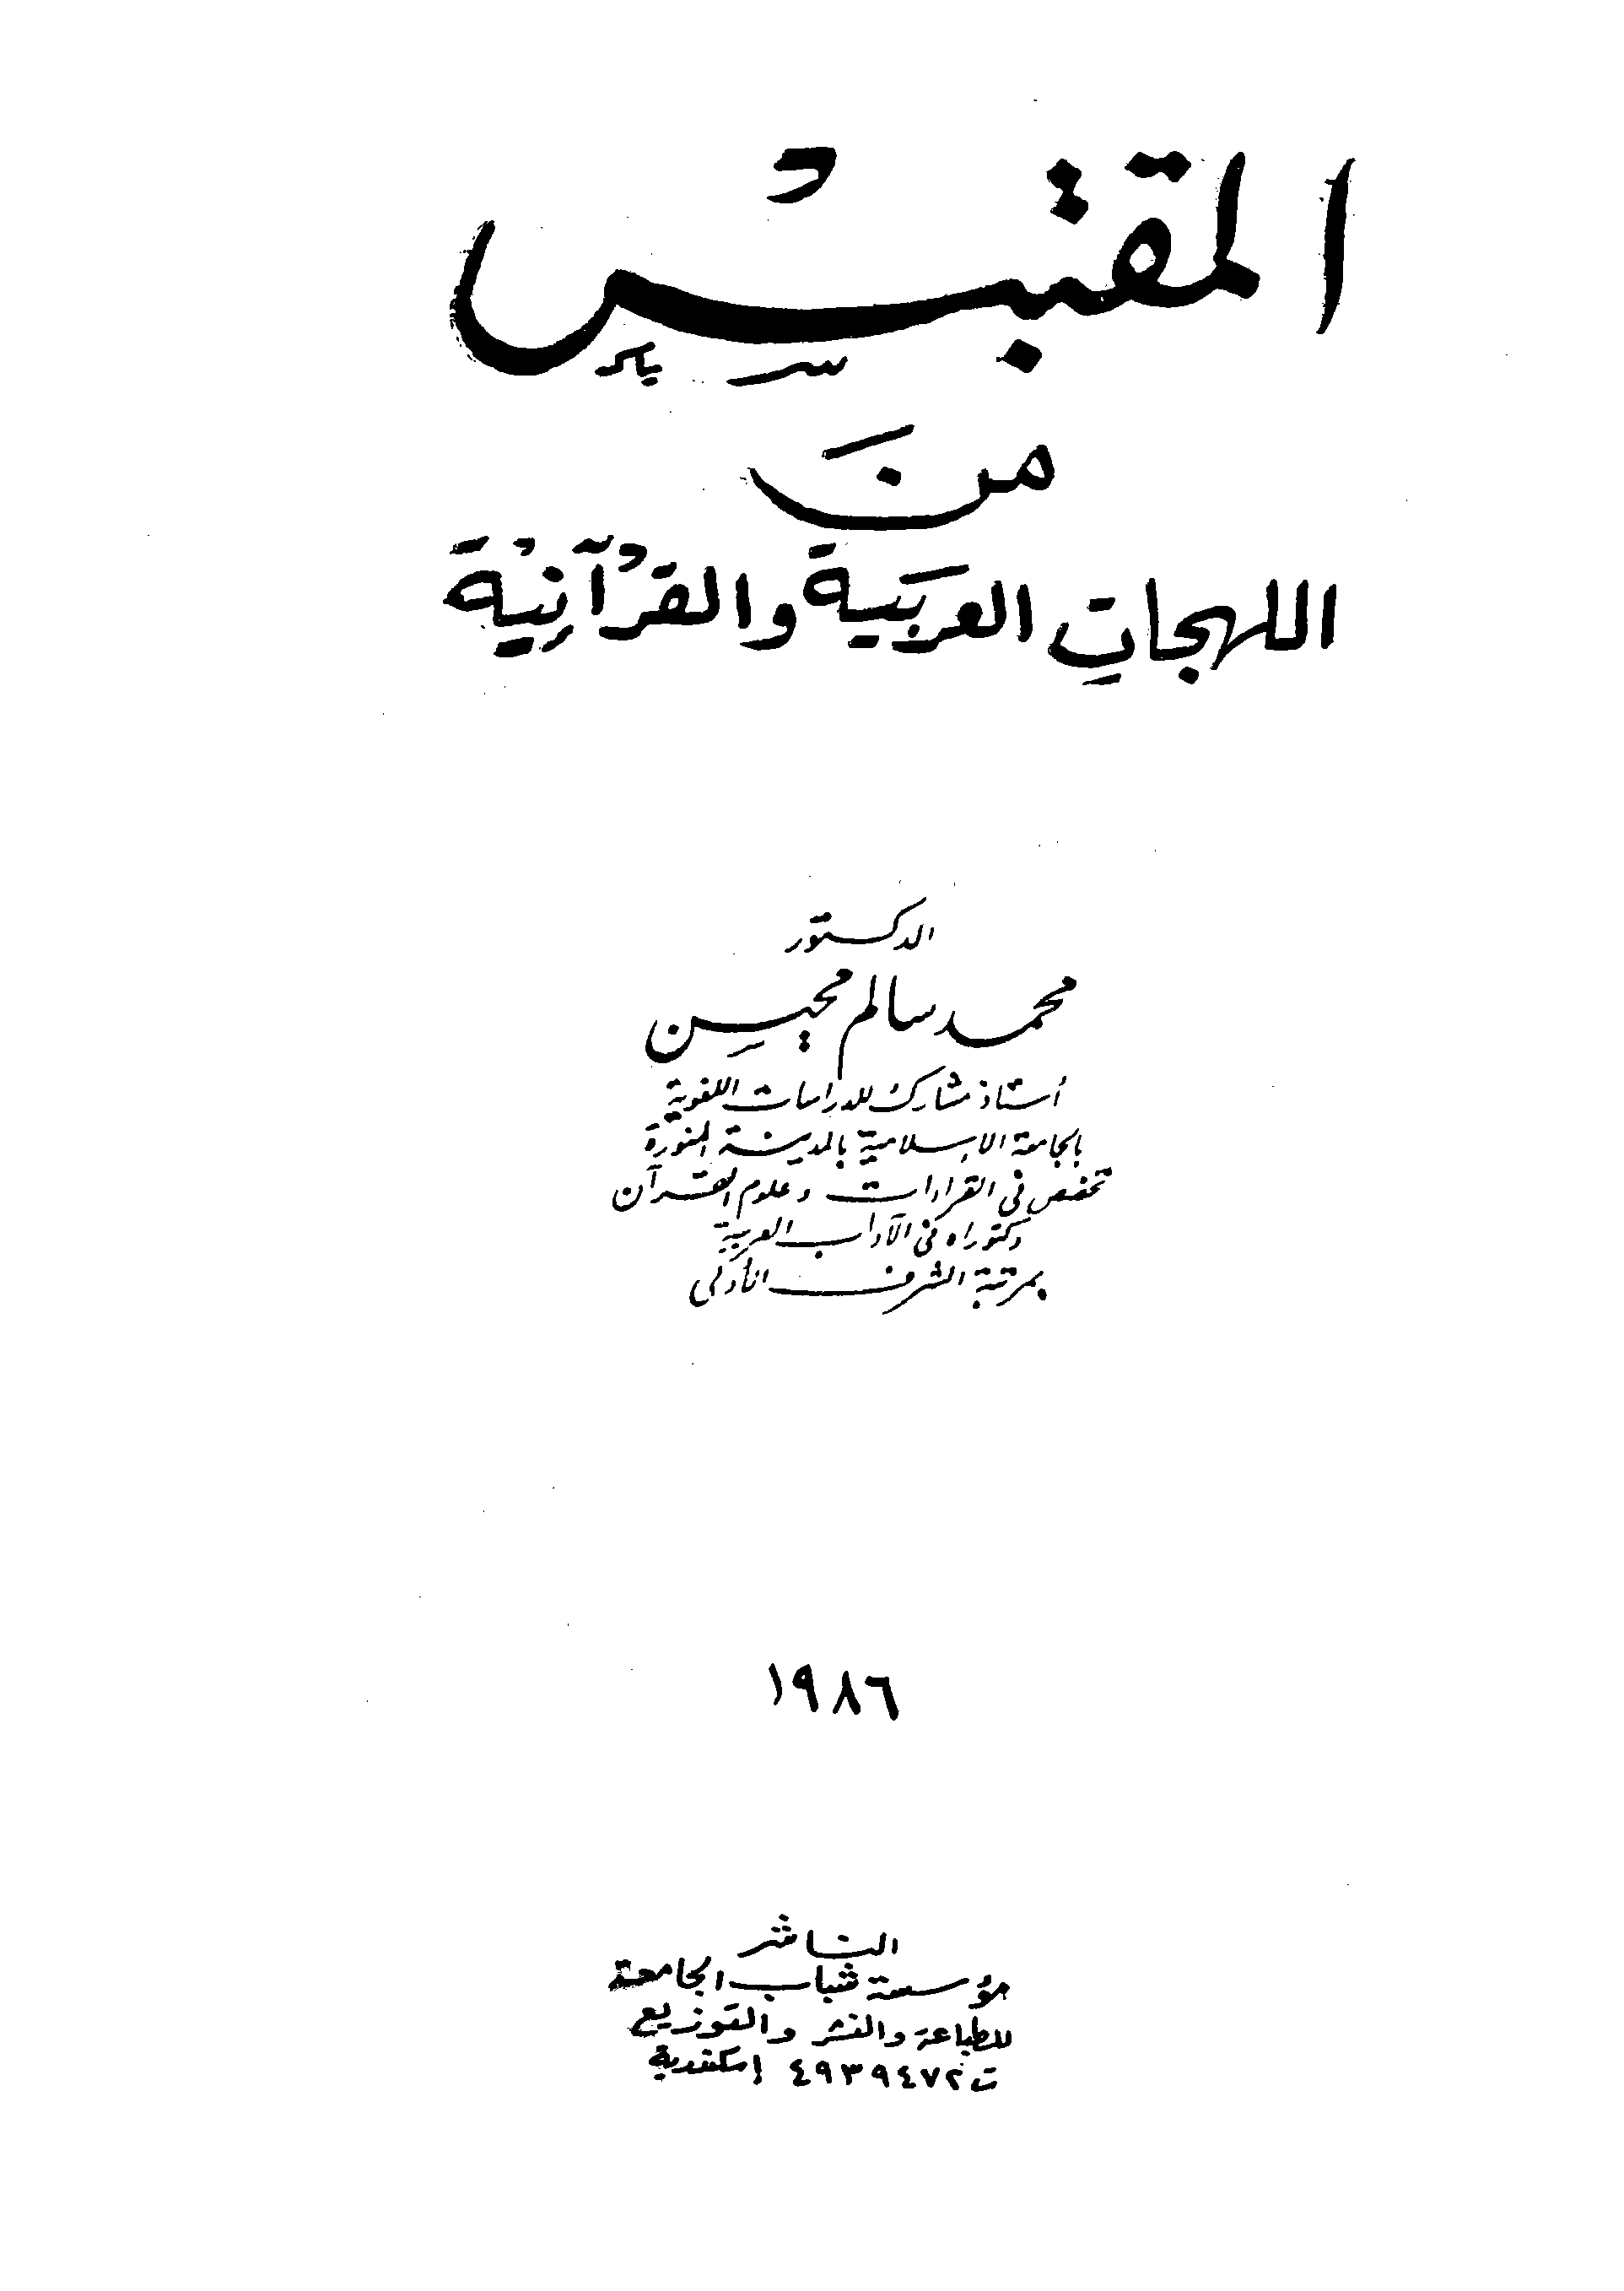 تحميل كتاب المقتبس من اللهجات العربية والقرآنية للمؤلف: الدكتور محمد محمد محمد سالم محيسن (ت 1422)